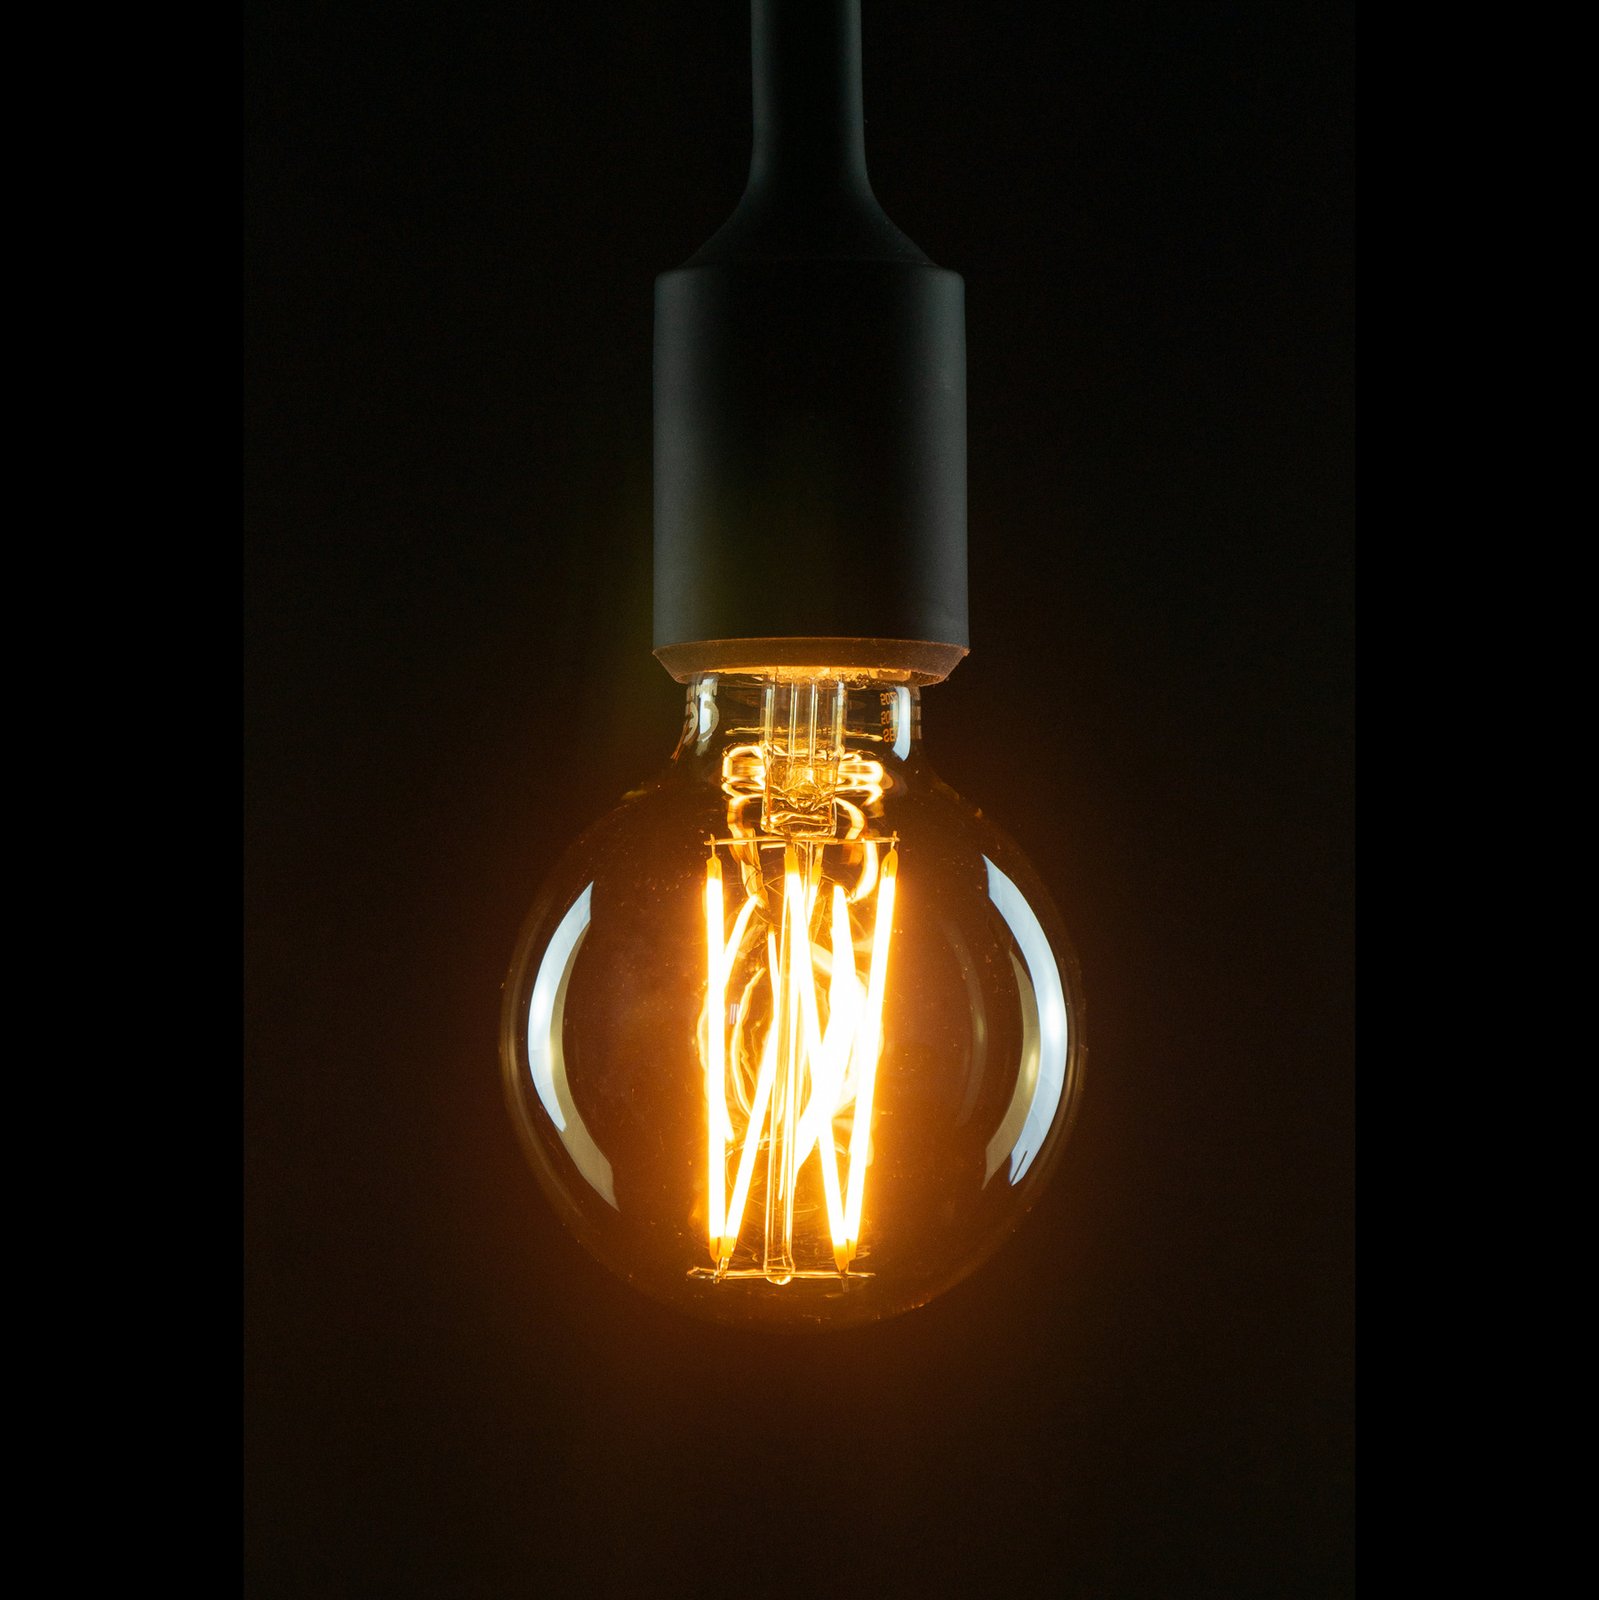 SEGULA LED-Globelampe E27 G80 5W 2.200K gold dimm